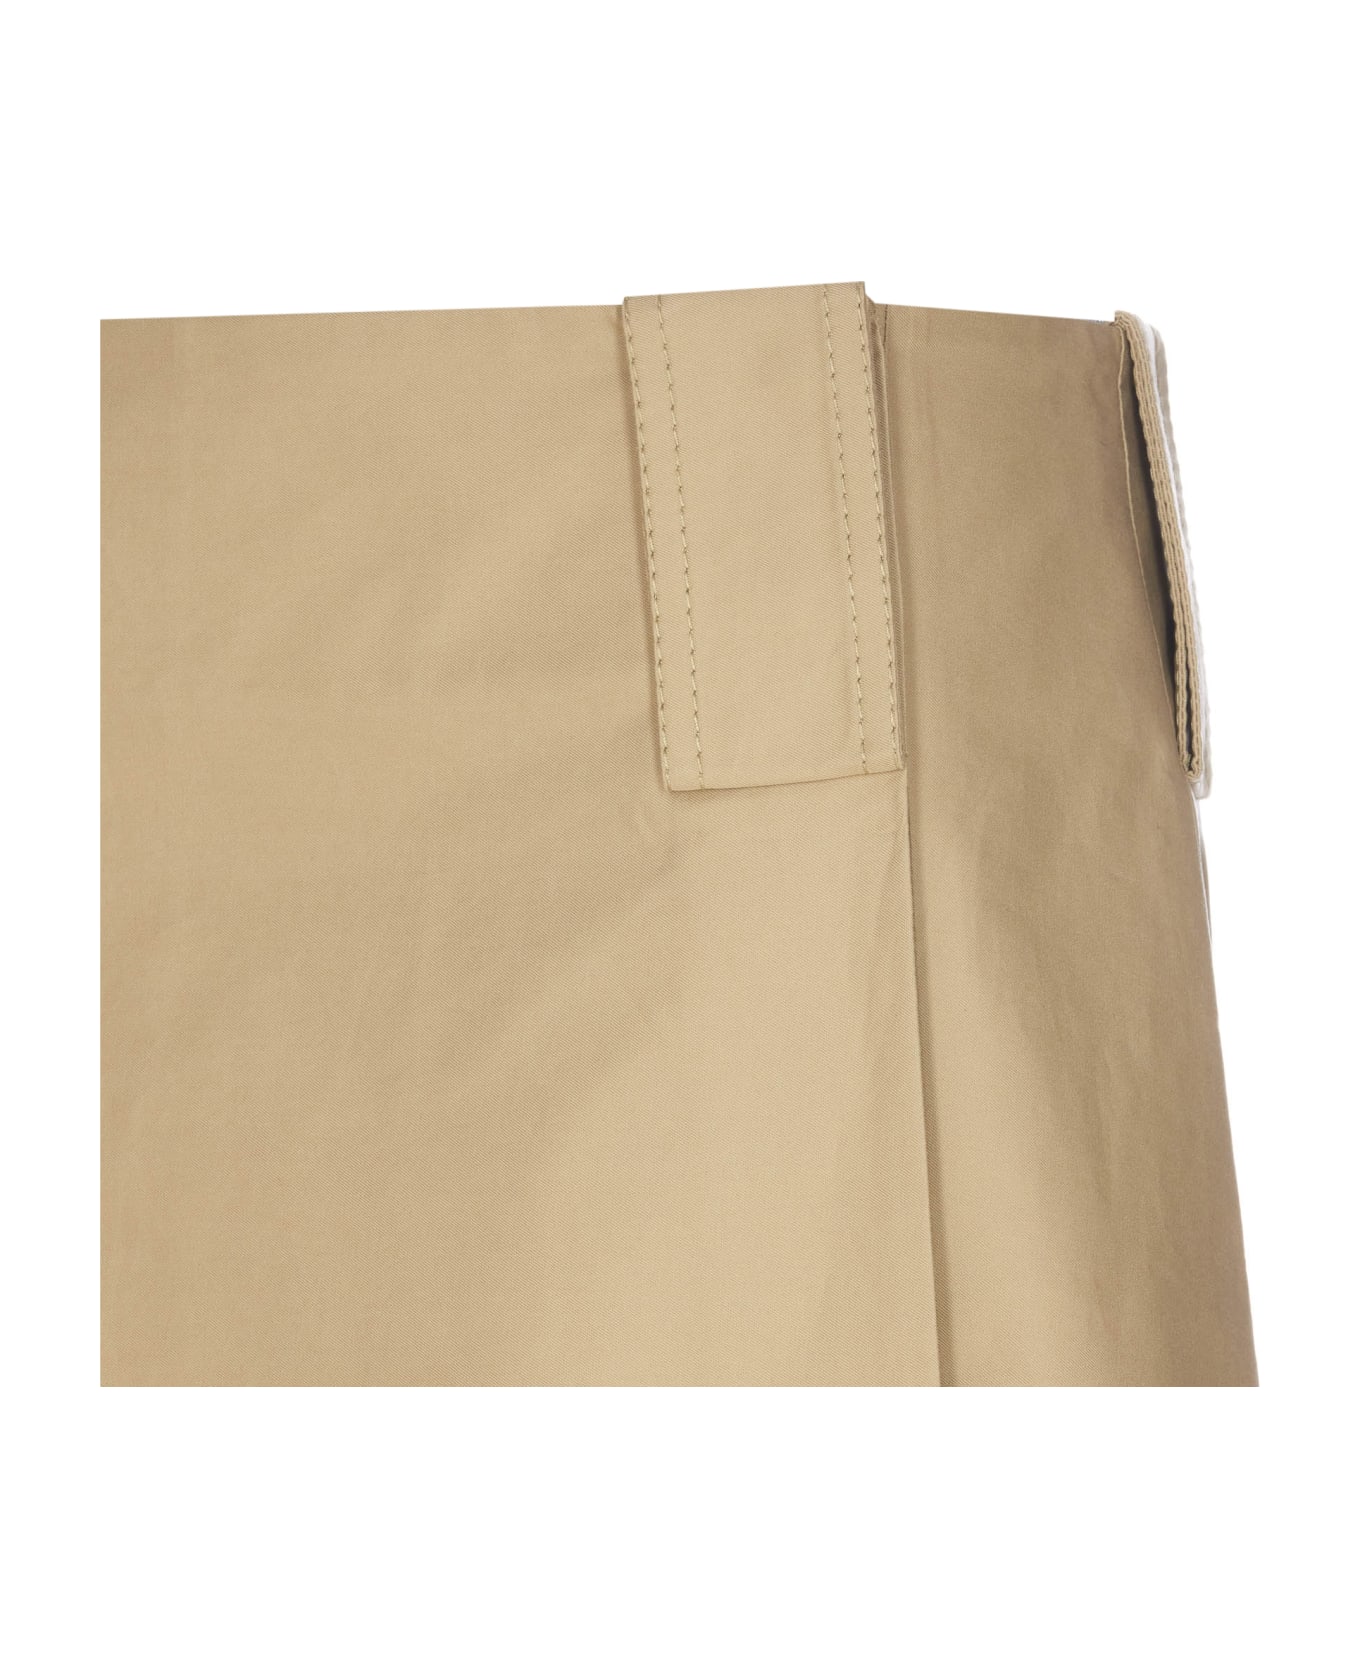 Burberry Hunter Skirt - Beige